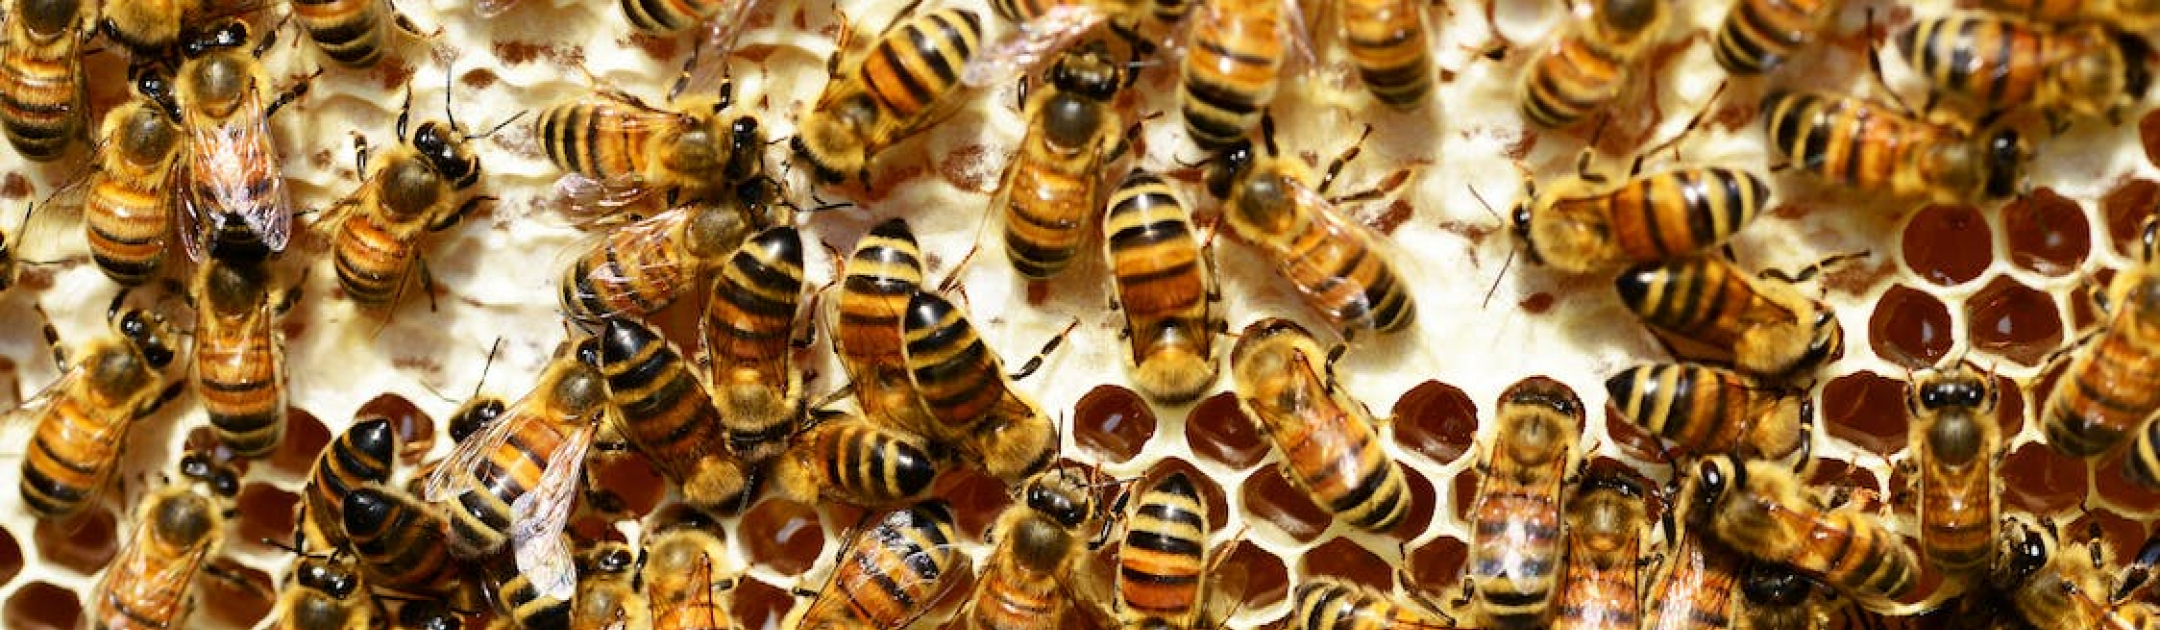 Bee stock photo 